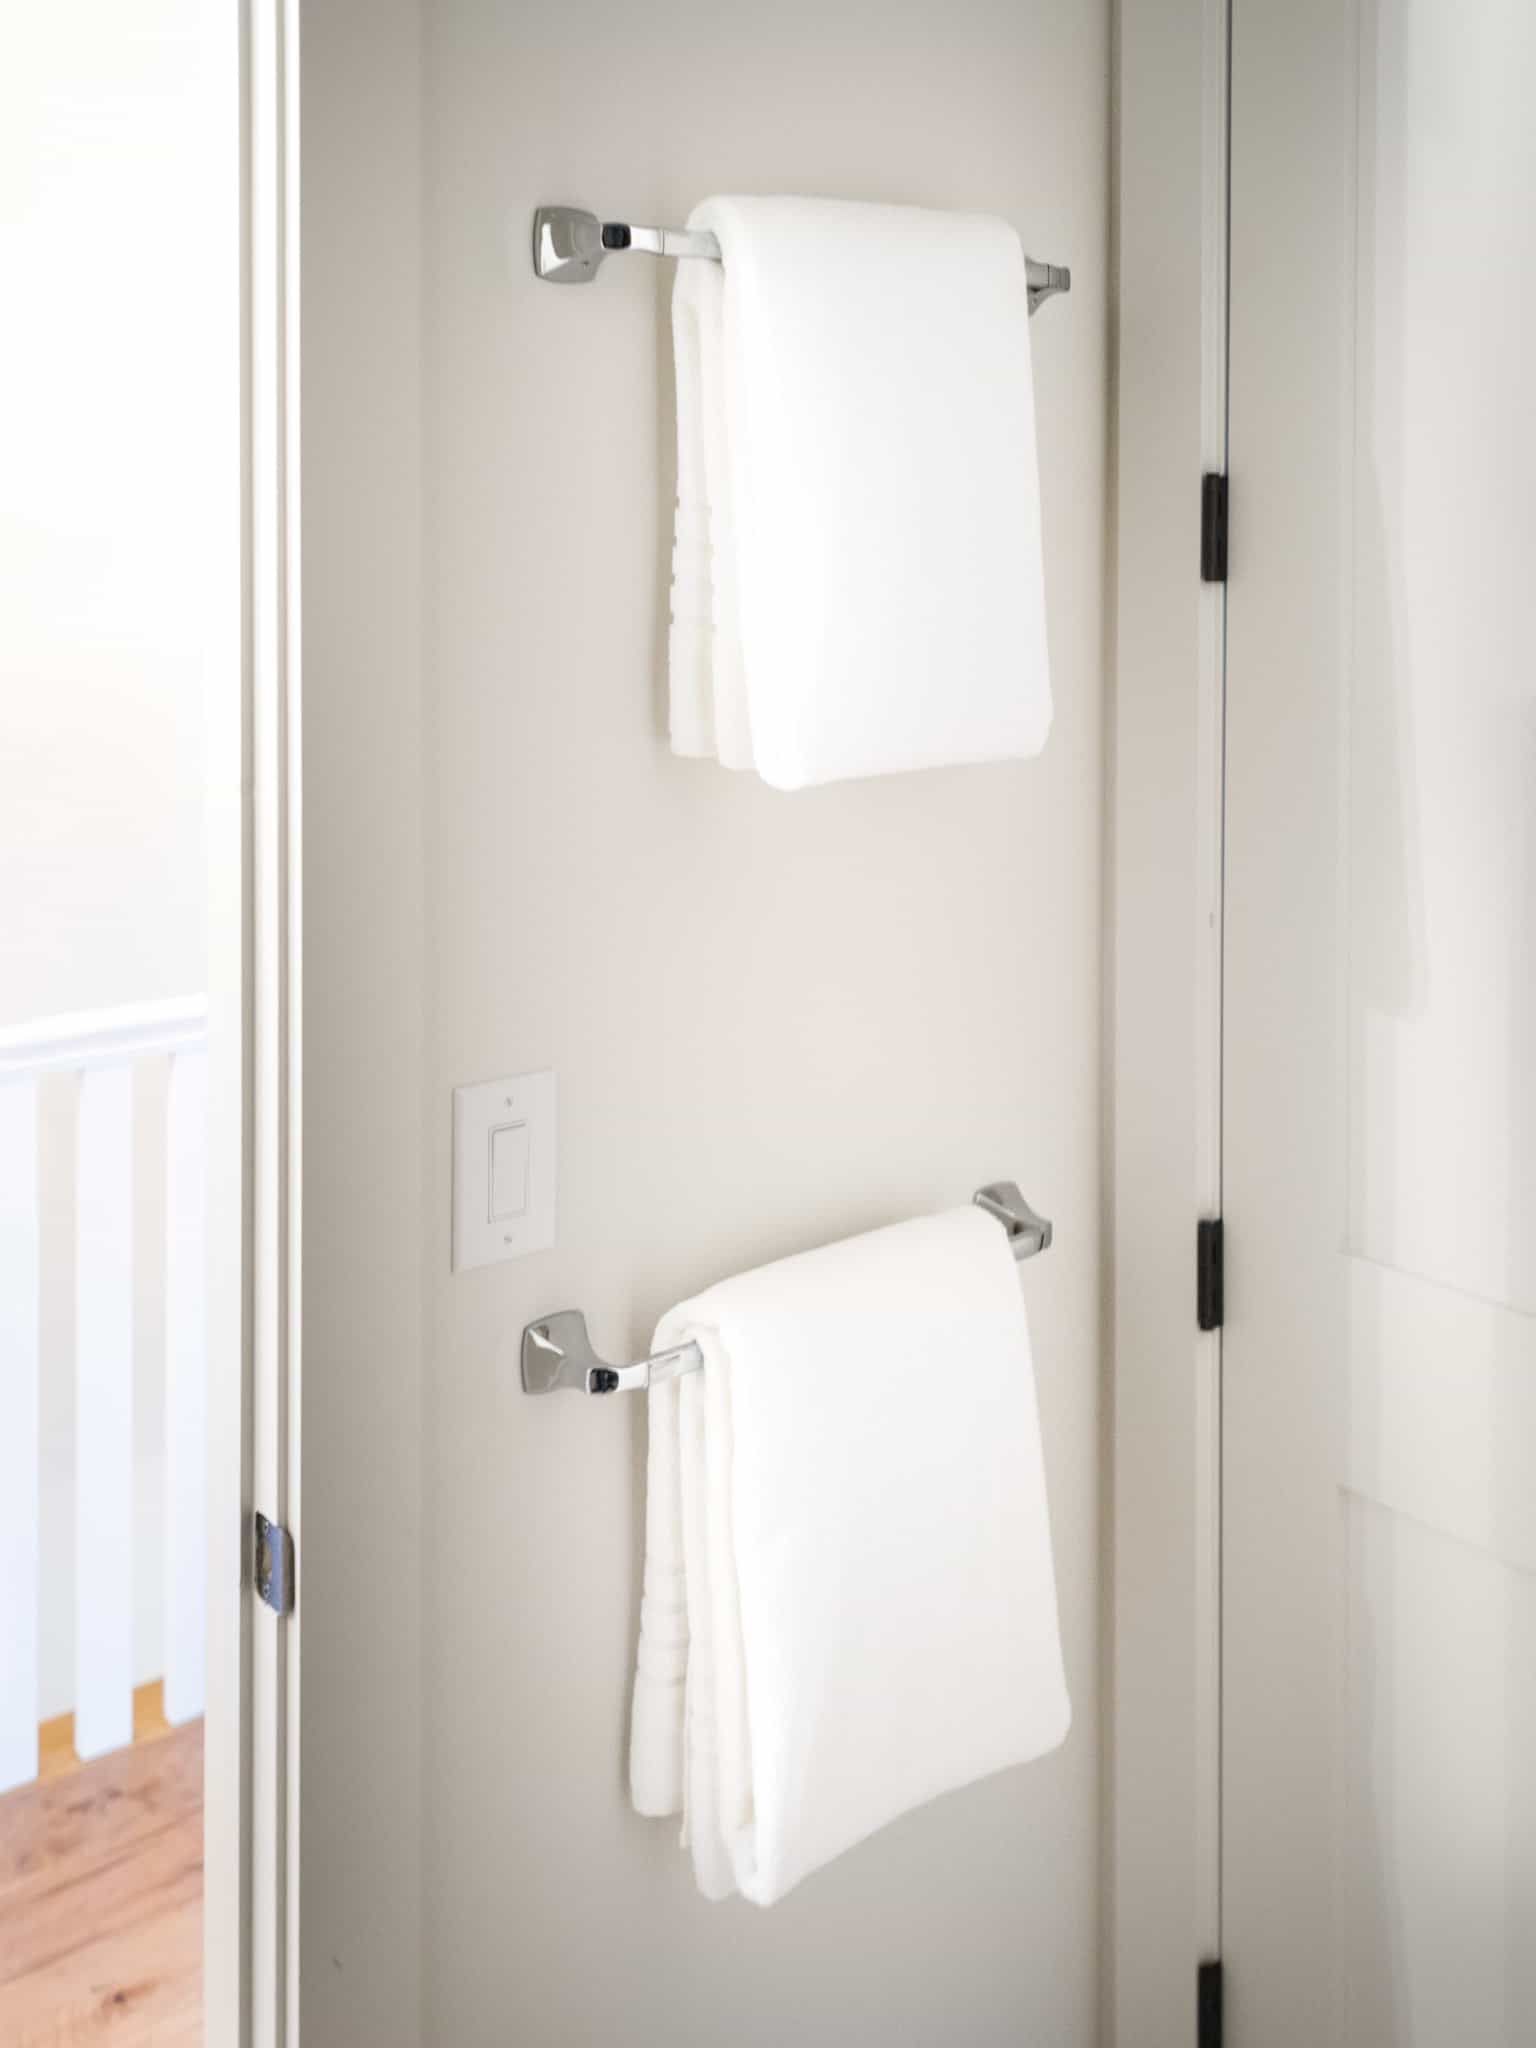 Chrome Towel Racks Installation On Bathroom Door (View 10 of 11)